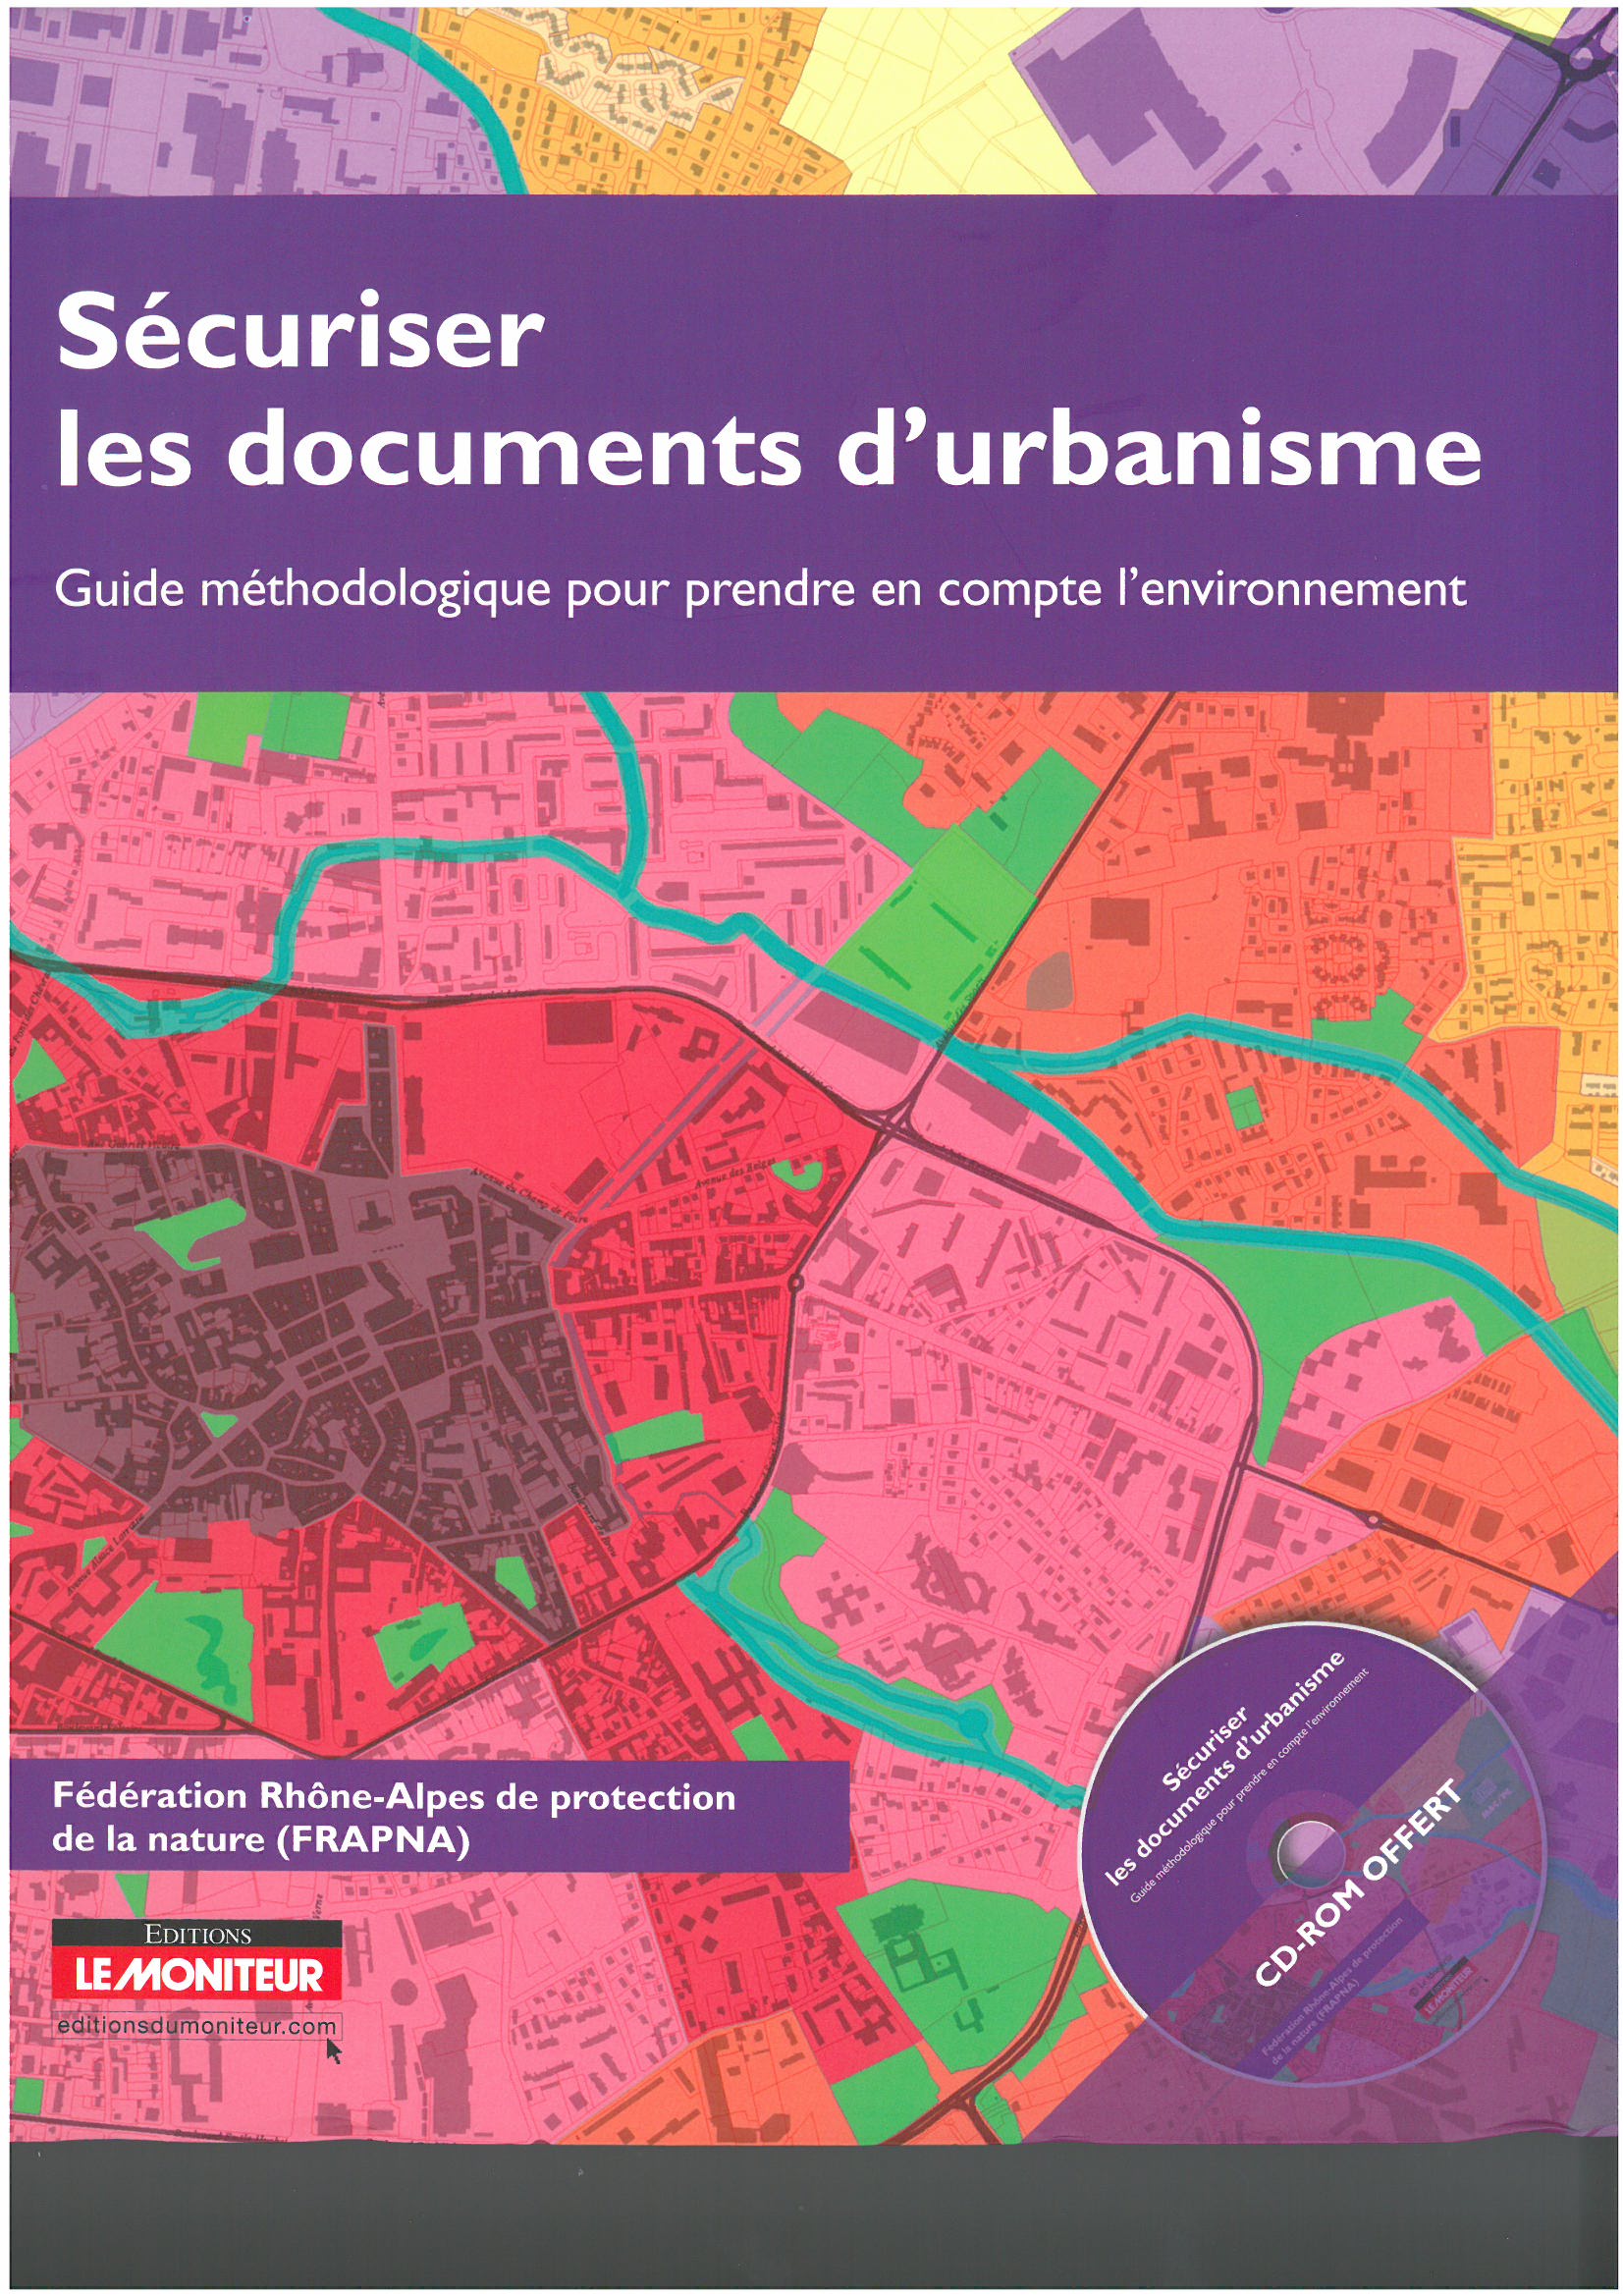 Couverture_Securiser_Documents_Urbanisme